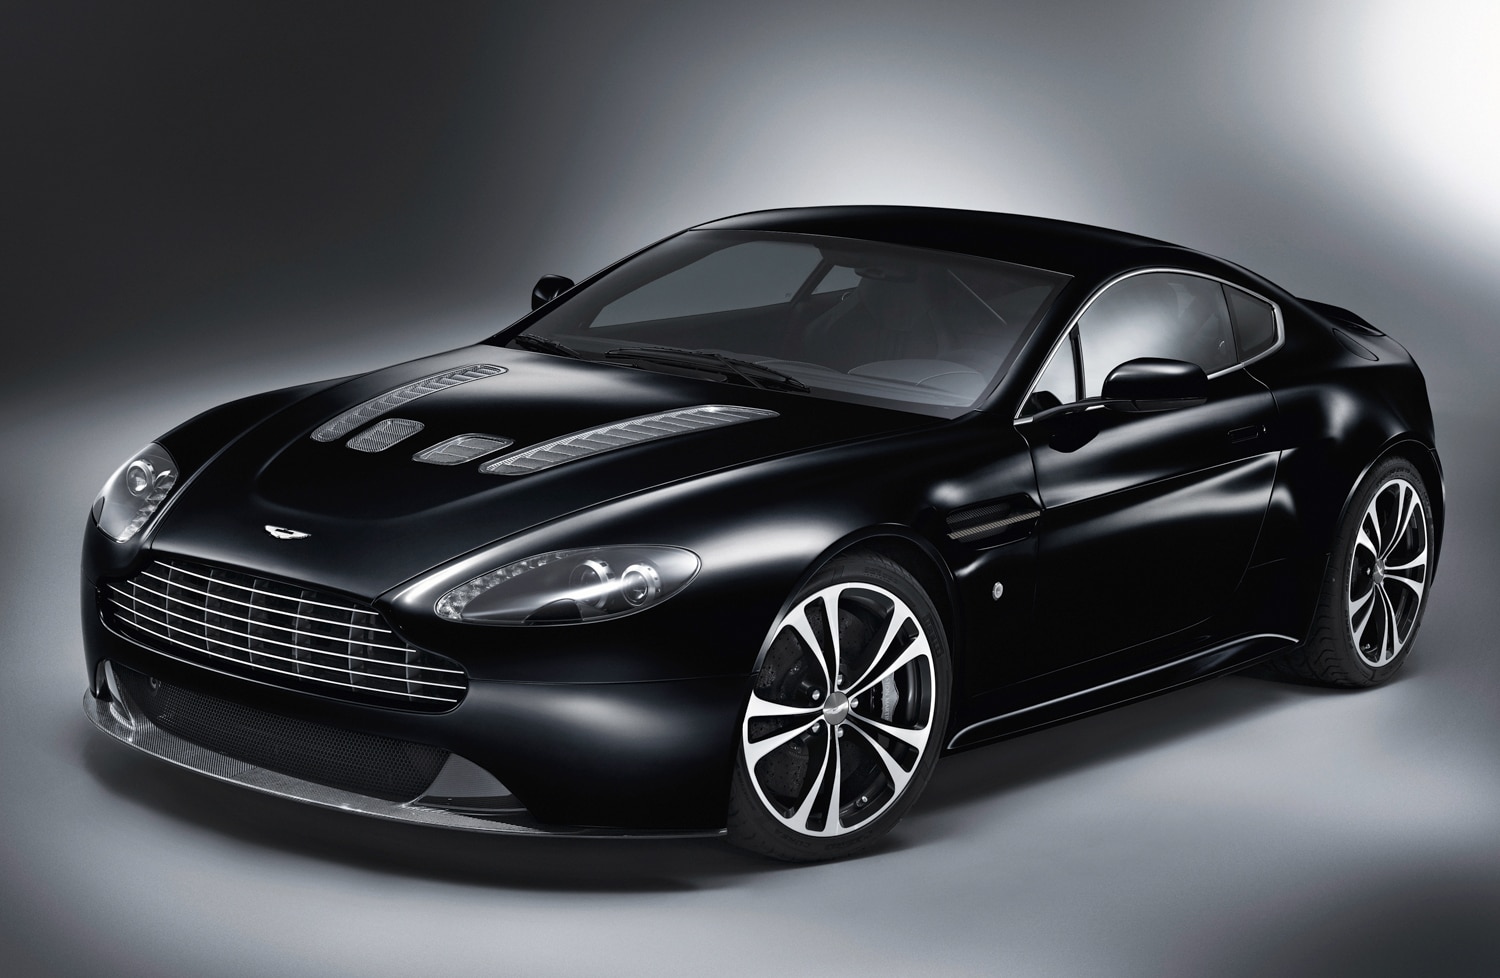 Remember Me: Aston Martin V12 Vantage Carbon Black